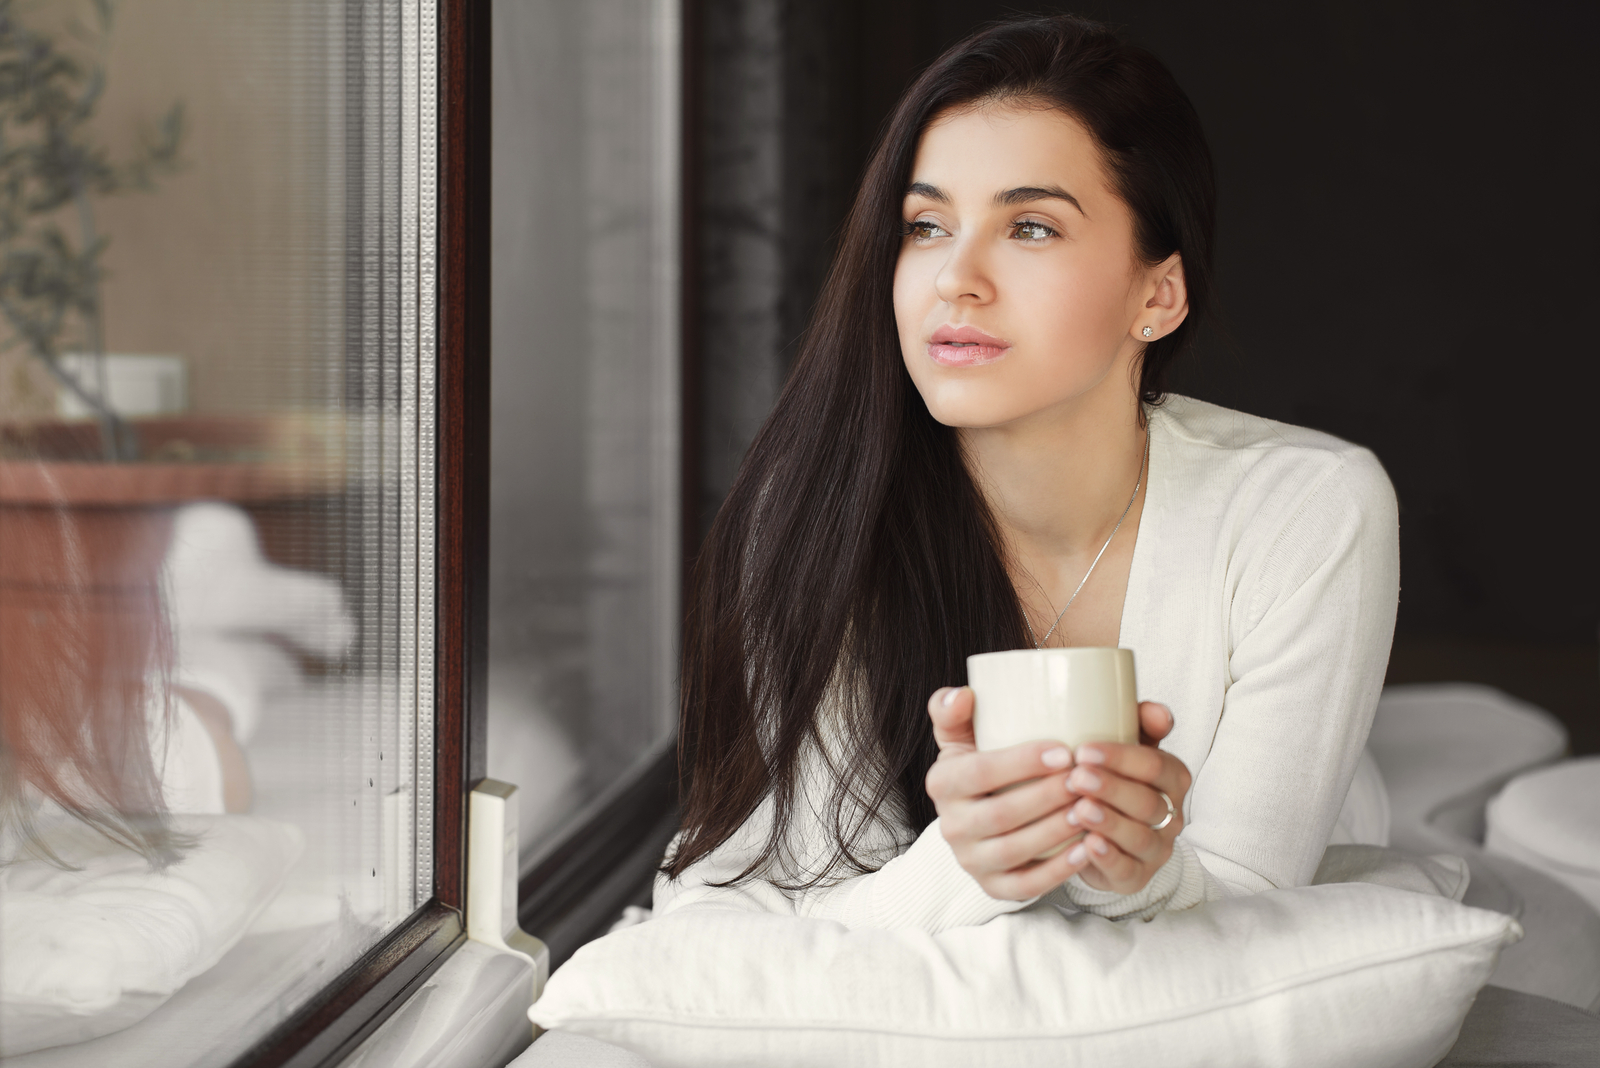 donna carina che beve una tazza di caffè vicino alla finestra